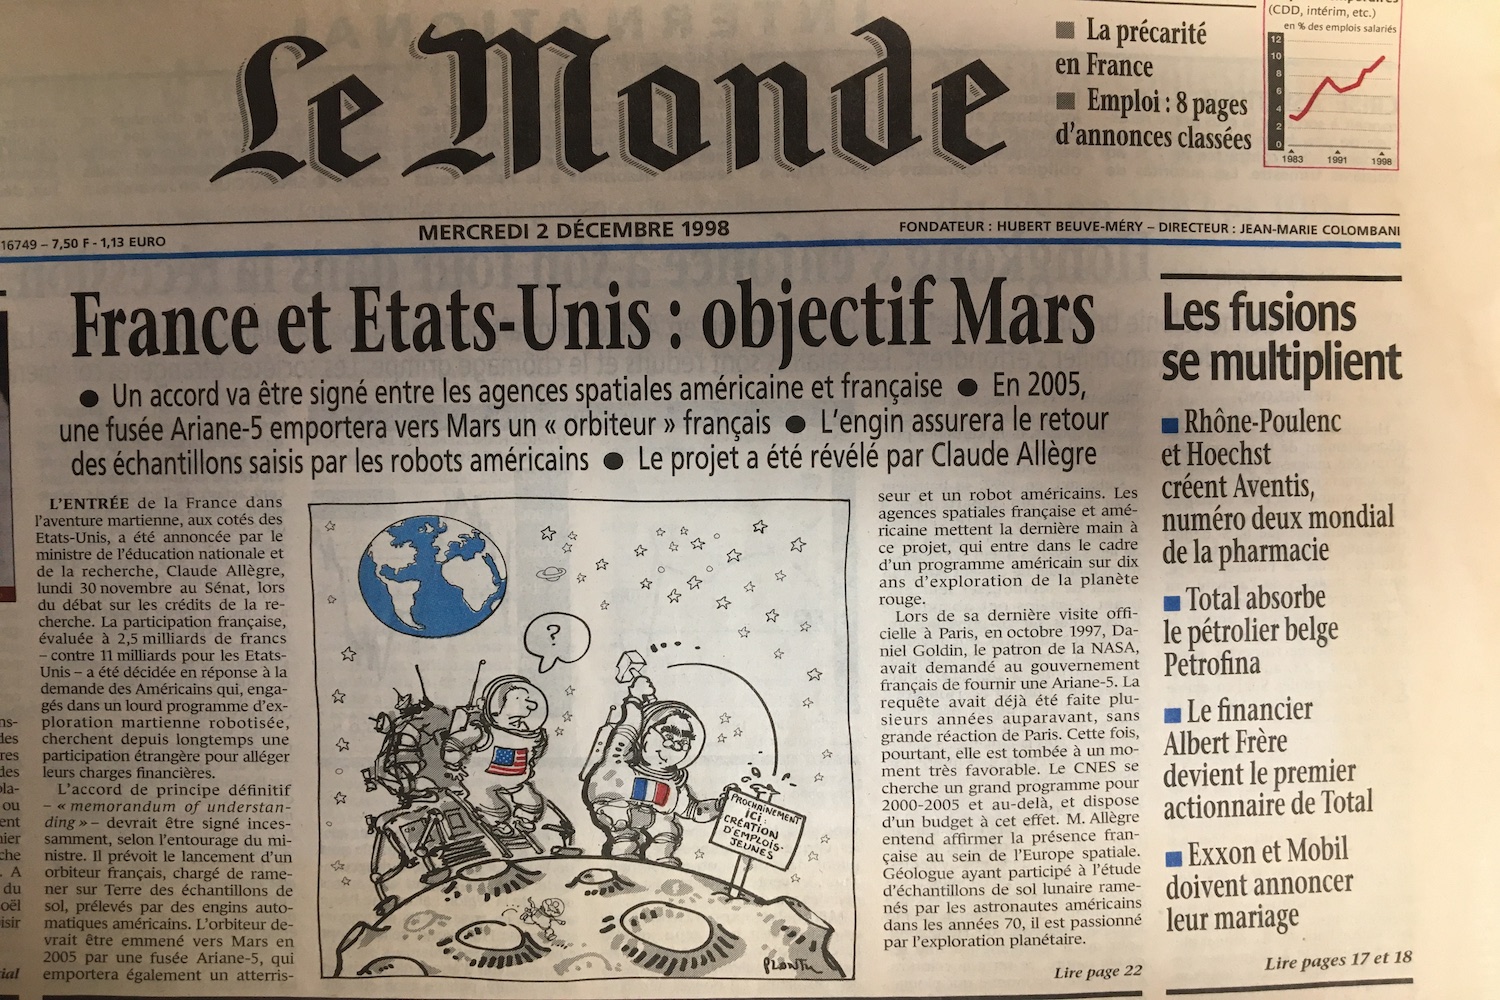 Rapporter des échantillons de Mars est un vieux rêve comme en atteste cette Une du journal Le Monde datant de 1998 © Globe Reporters